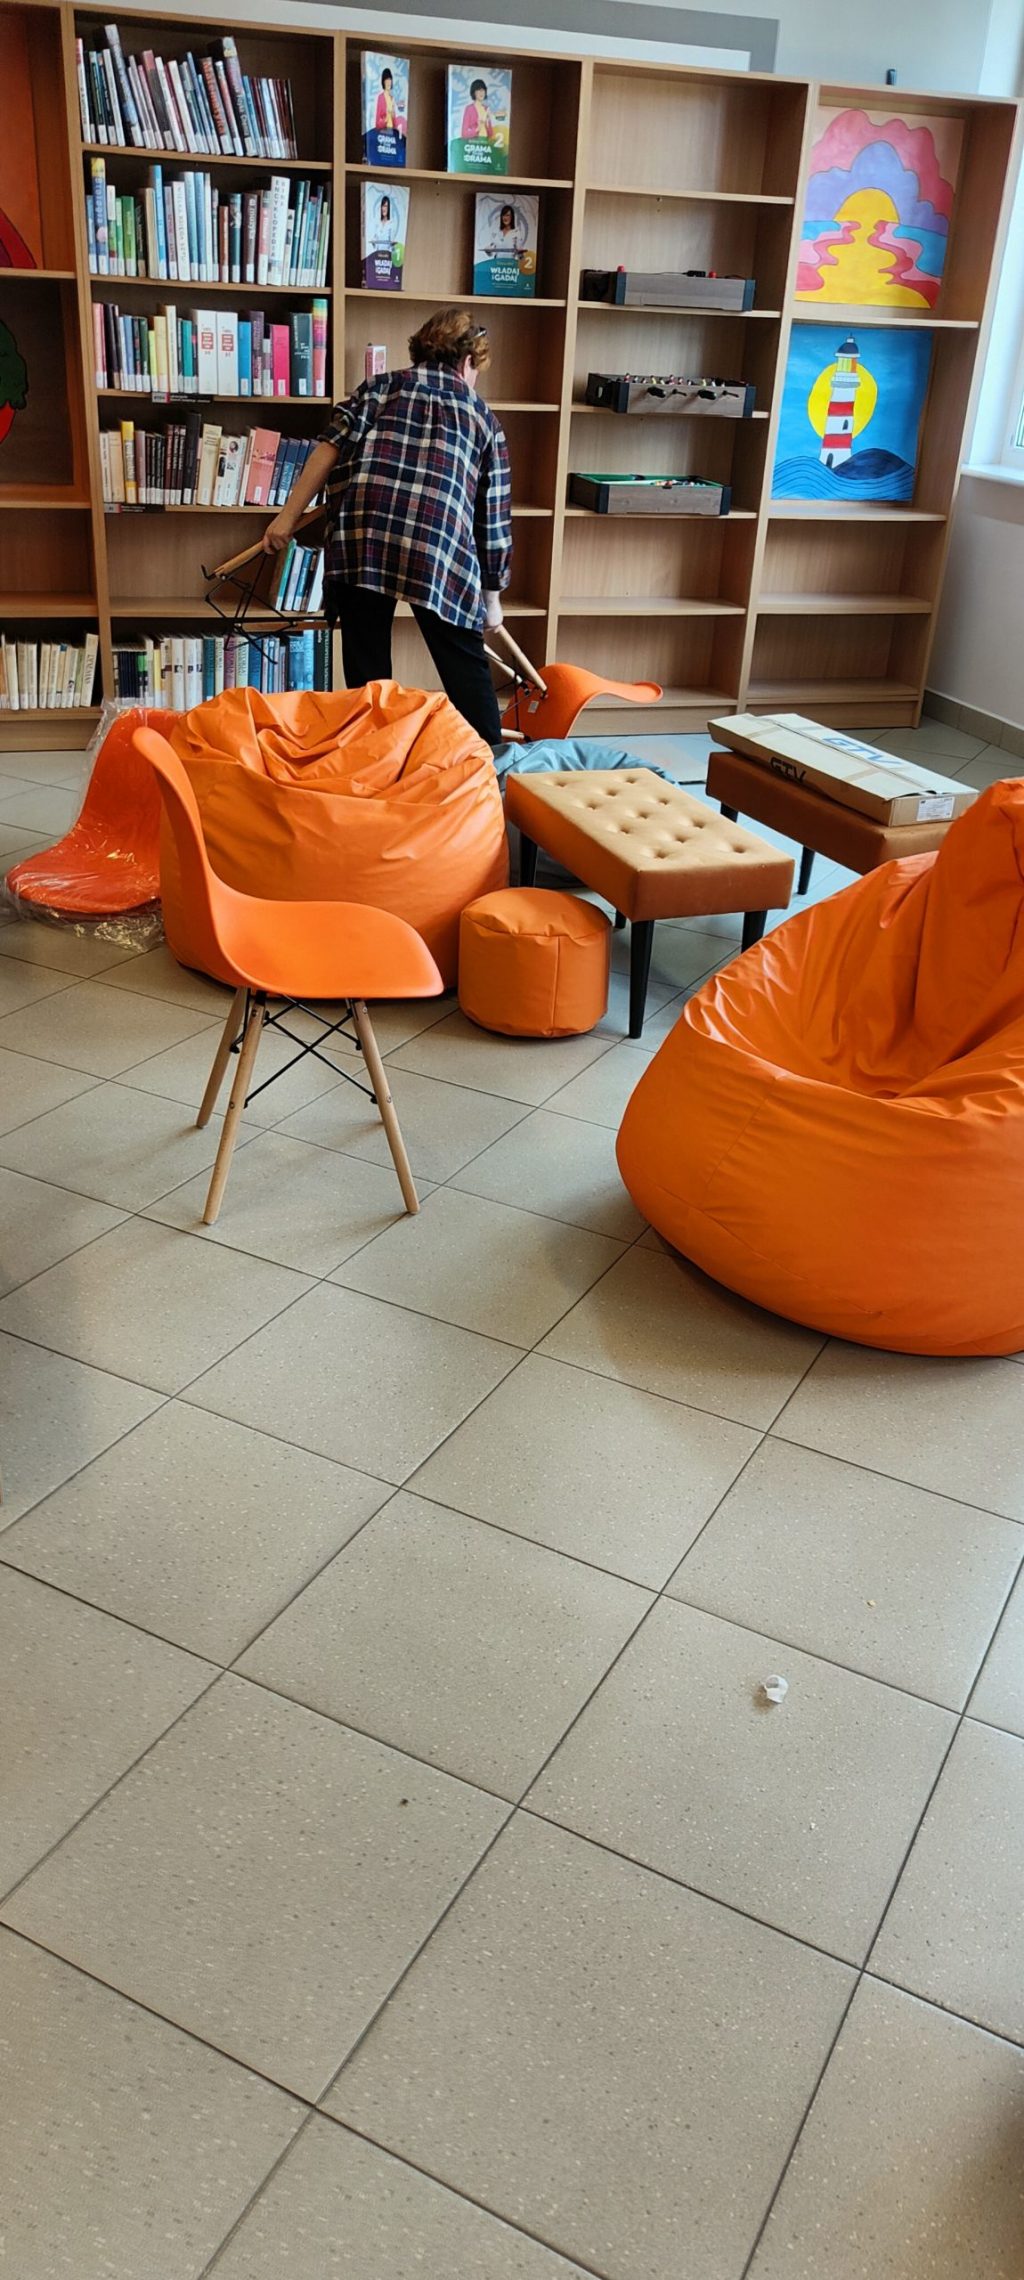 Zdjęcie przedstawiające elementy umeblowania - pomarańczowe krzesło i poduchy, ławki tapicerowane. W tle regały z książkami i niosąca krzesło kobieta.